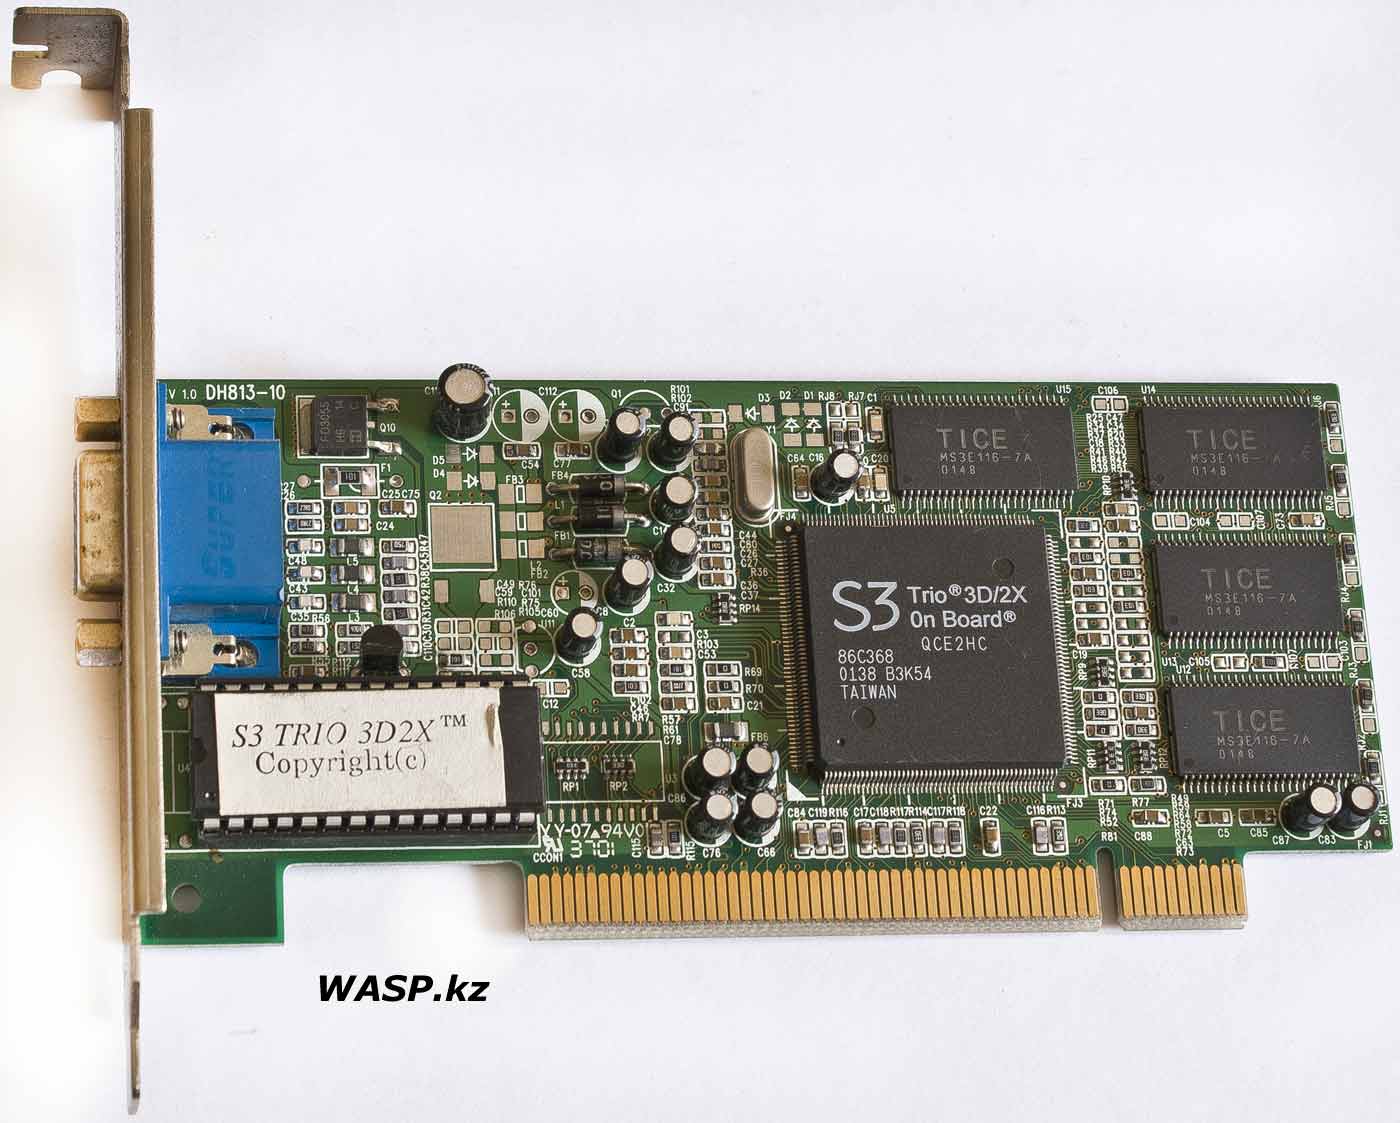 Видеокарта S3 Trio 3D/2X 8 Мб, PCI RS0202-362 обзор